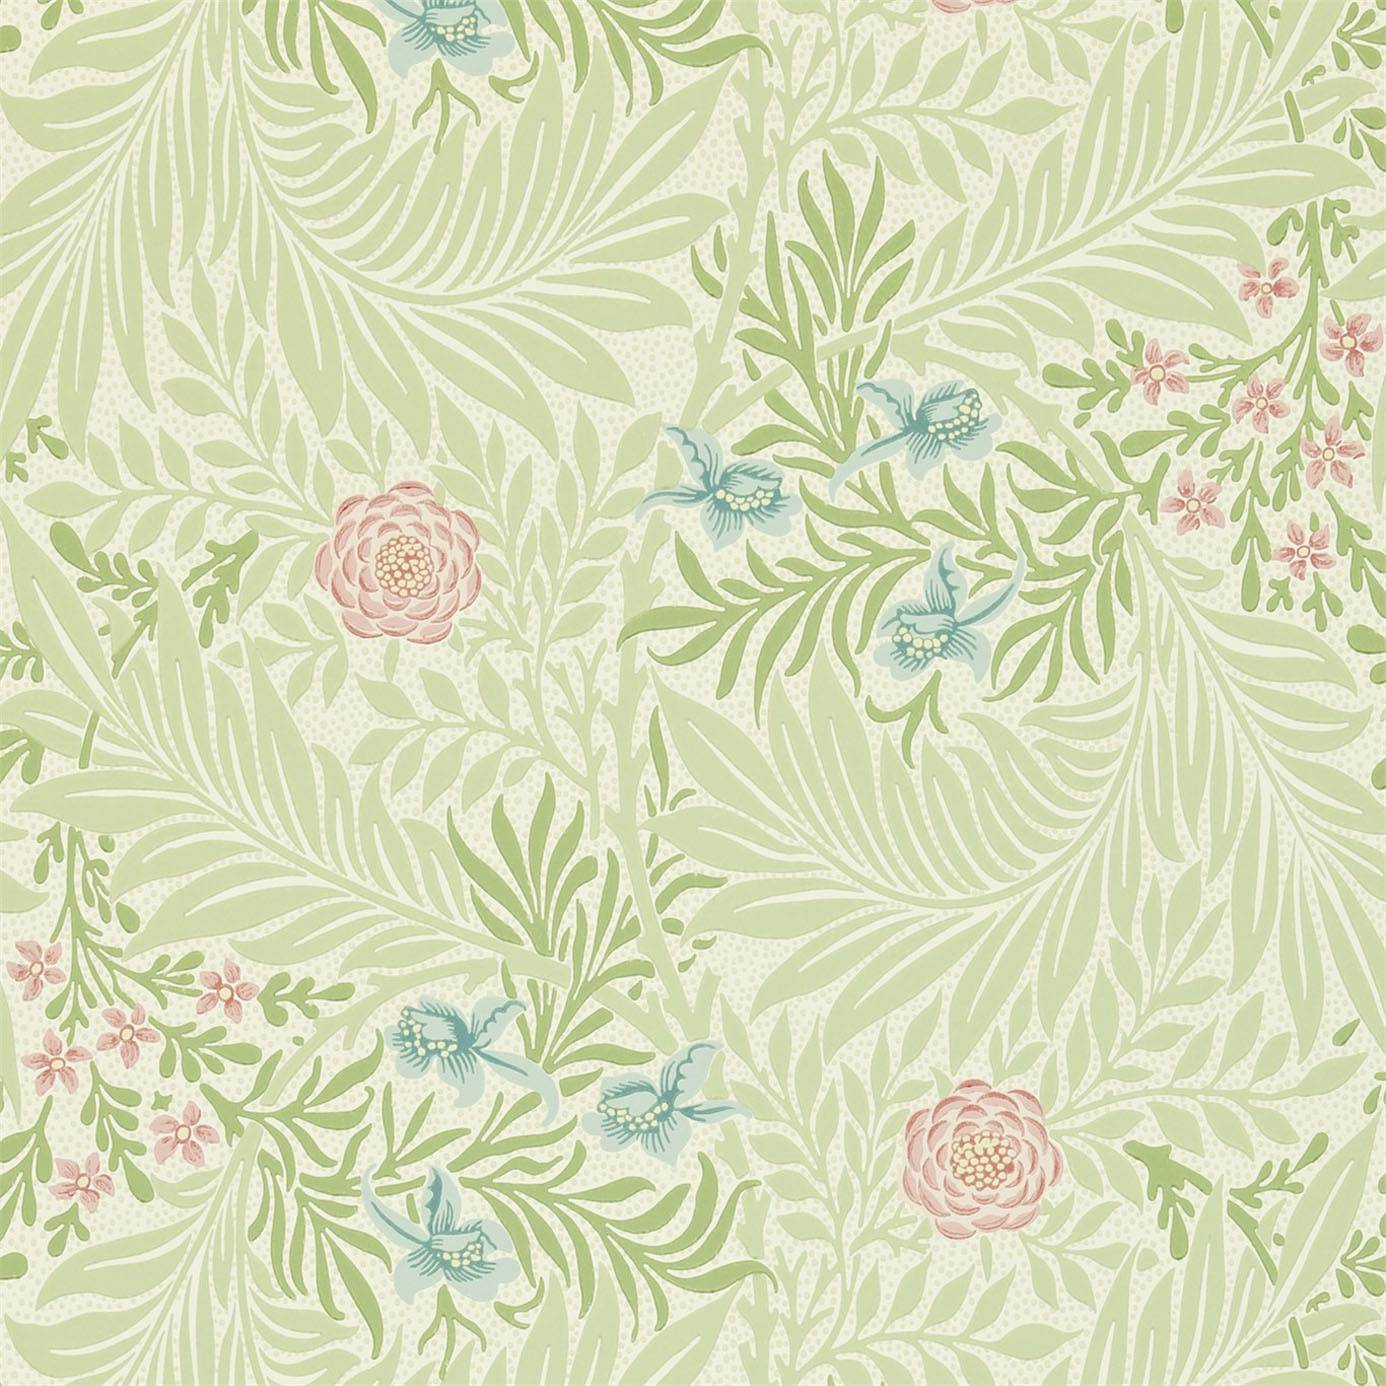 [48+] William Morris Reproduction Wallpaper | WallpaperSafari.com